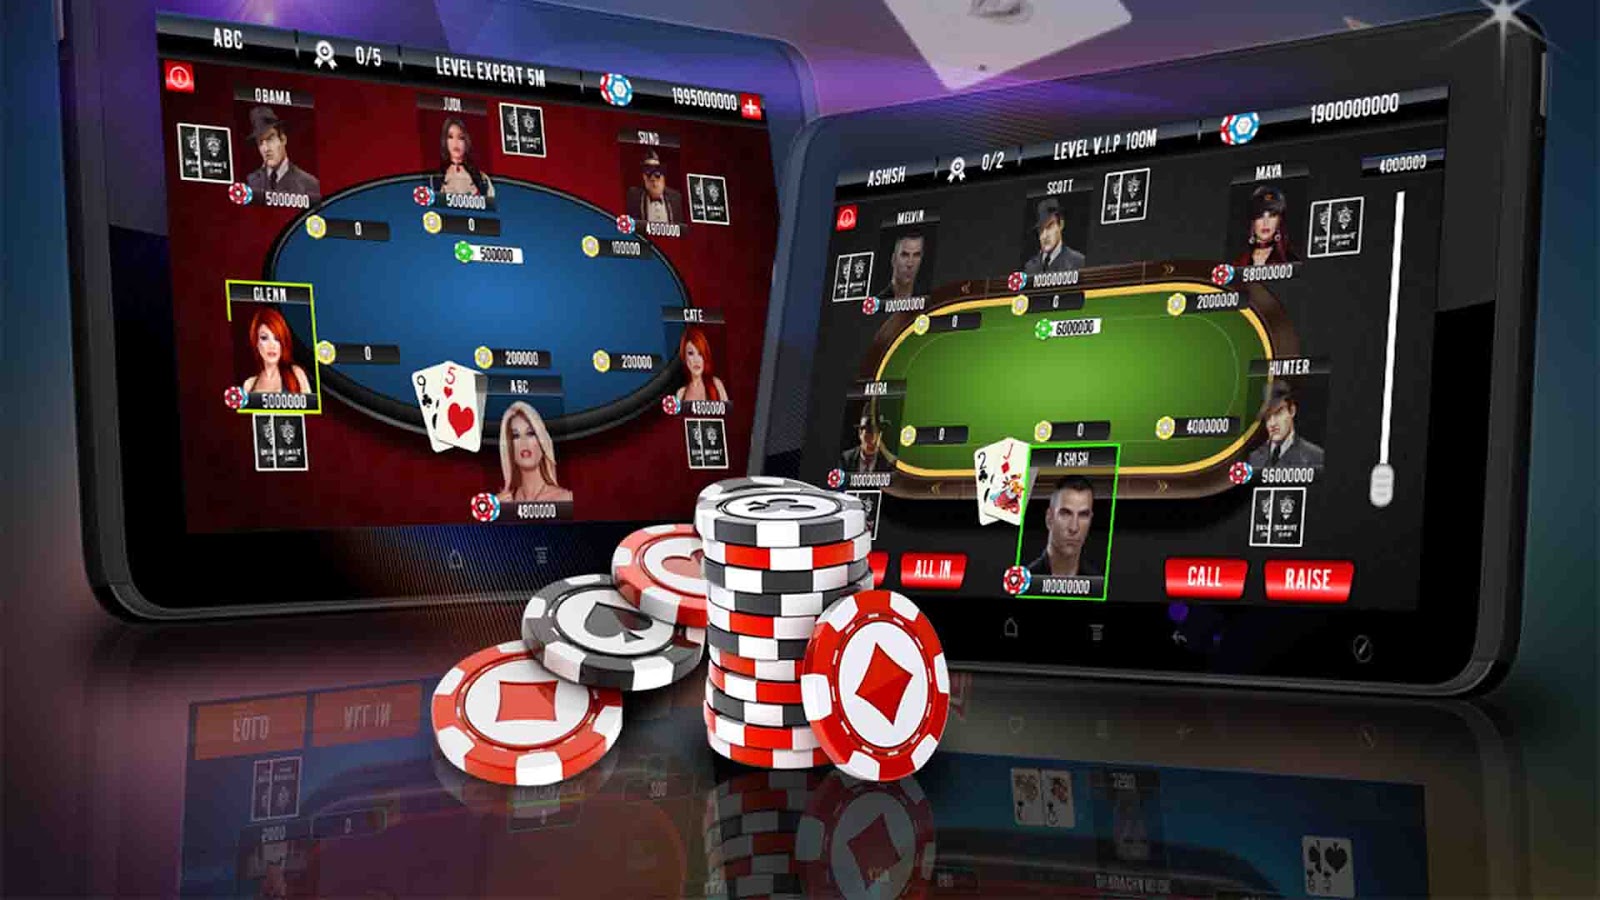 скачать бесплатно покер для онлайн игры